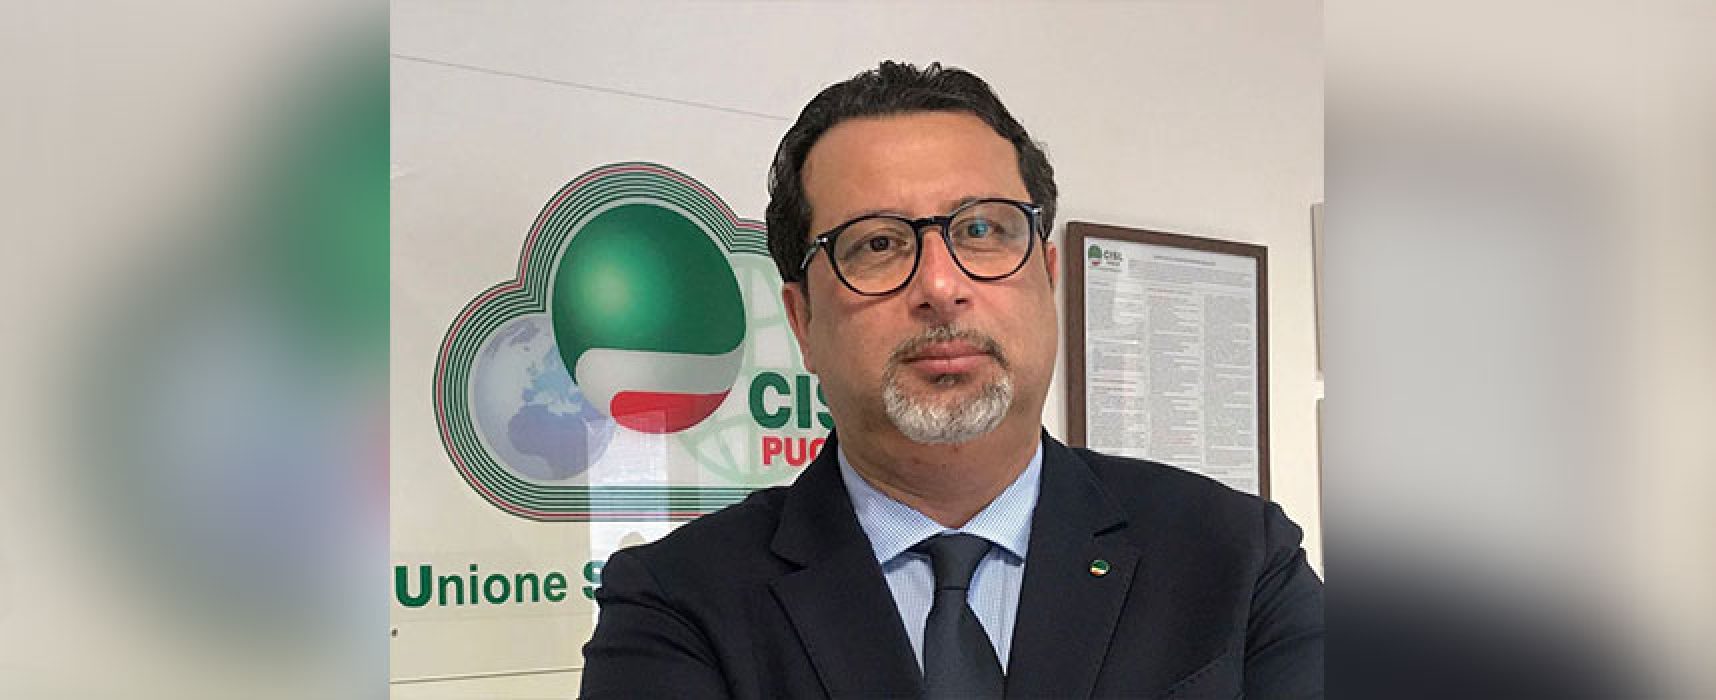 Castellucci (Cisl Puglia): “Vaccinarsi per tutelare salute e consolidare ripresa economica”